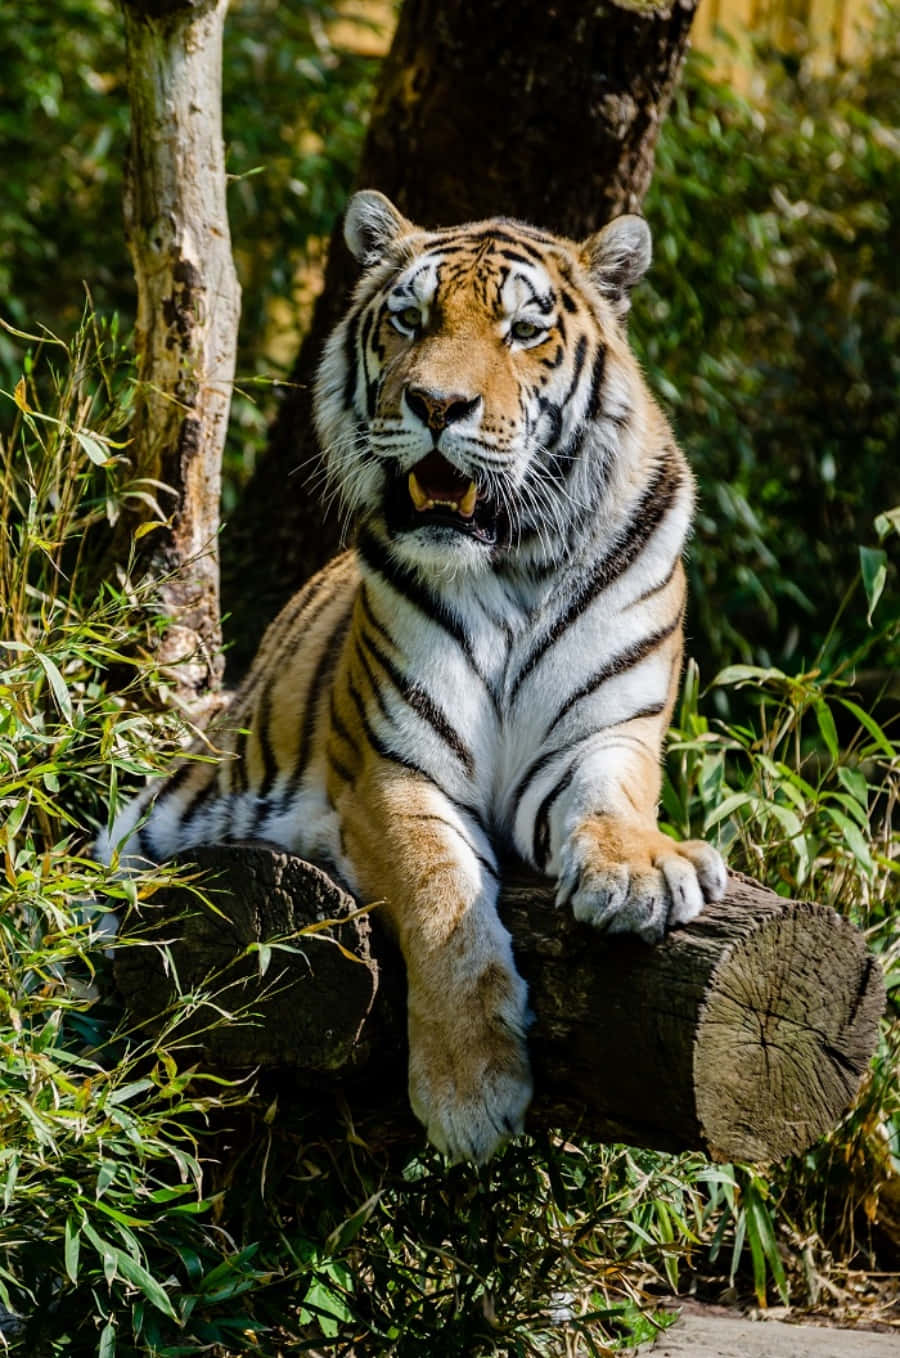 Majestic Tiger Looking at Camera